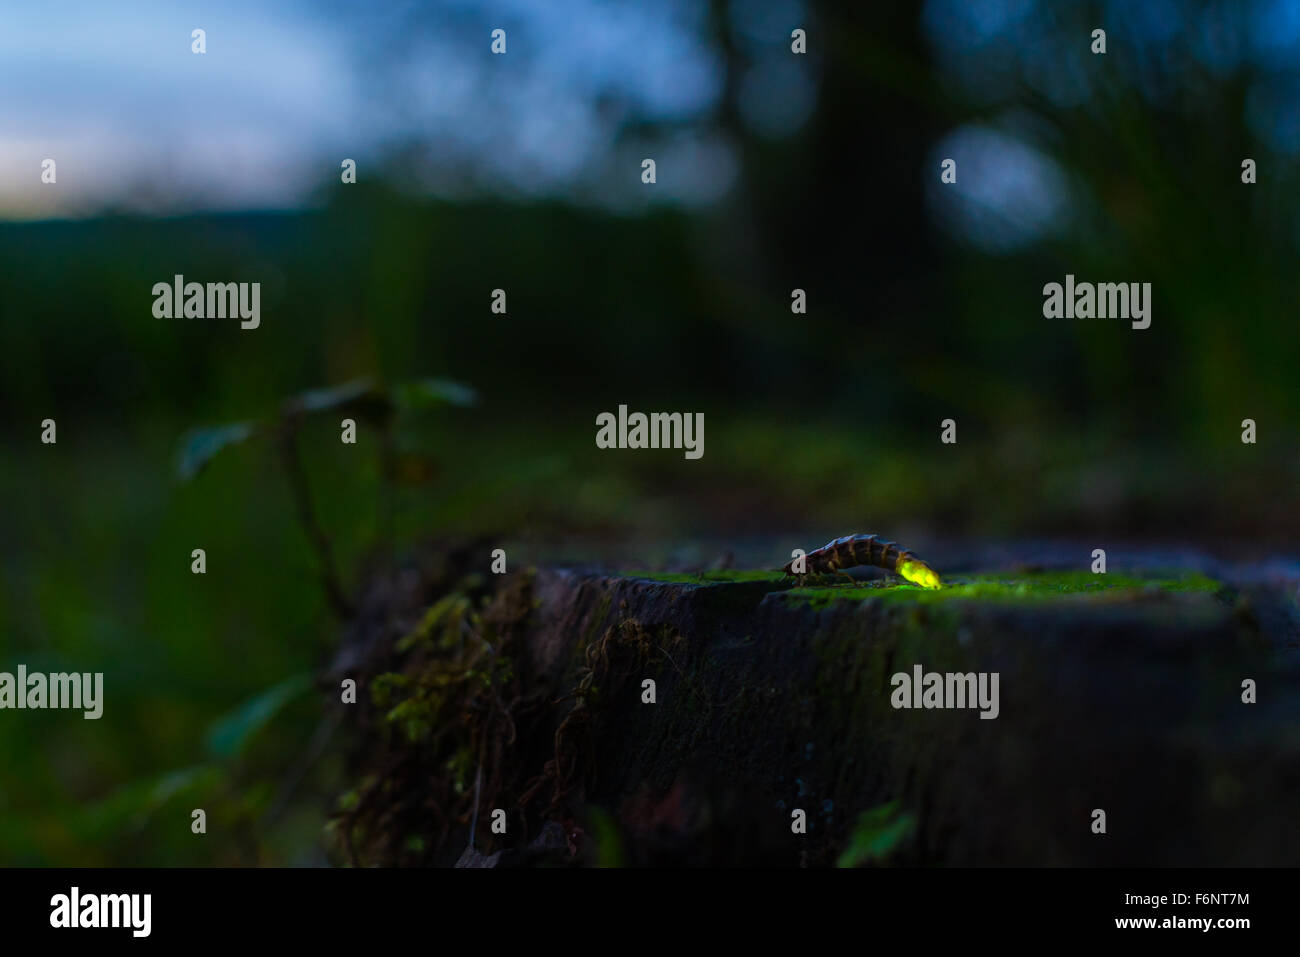 Single glowworm on tree stump in summer night Stock Photo